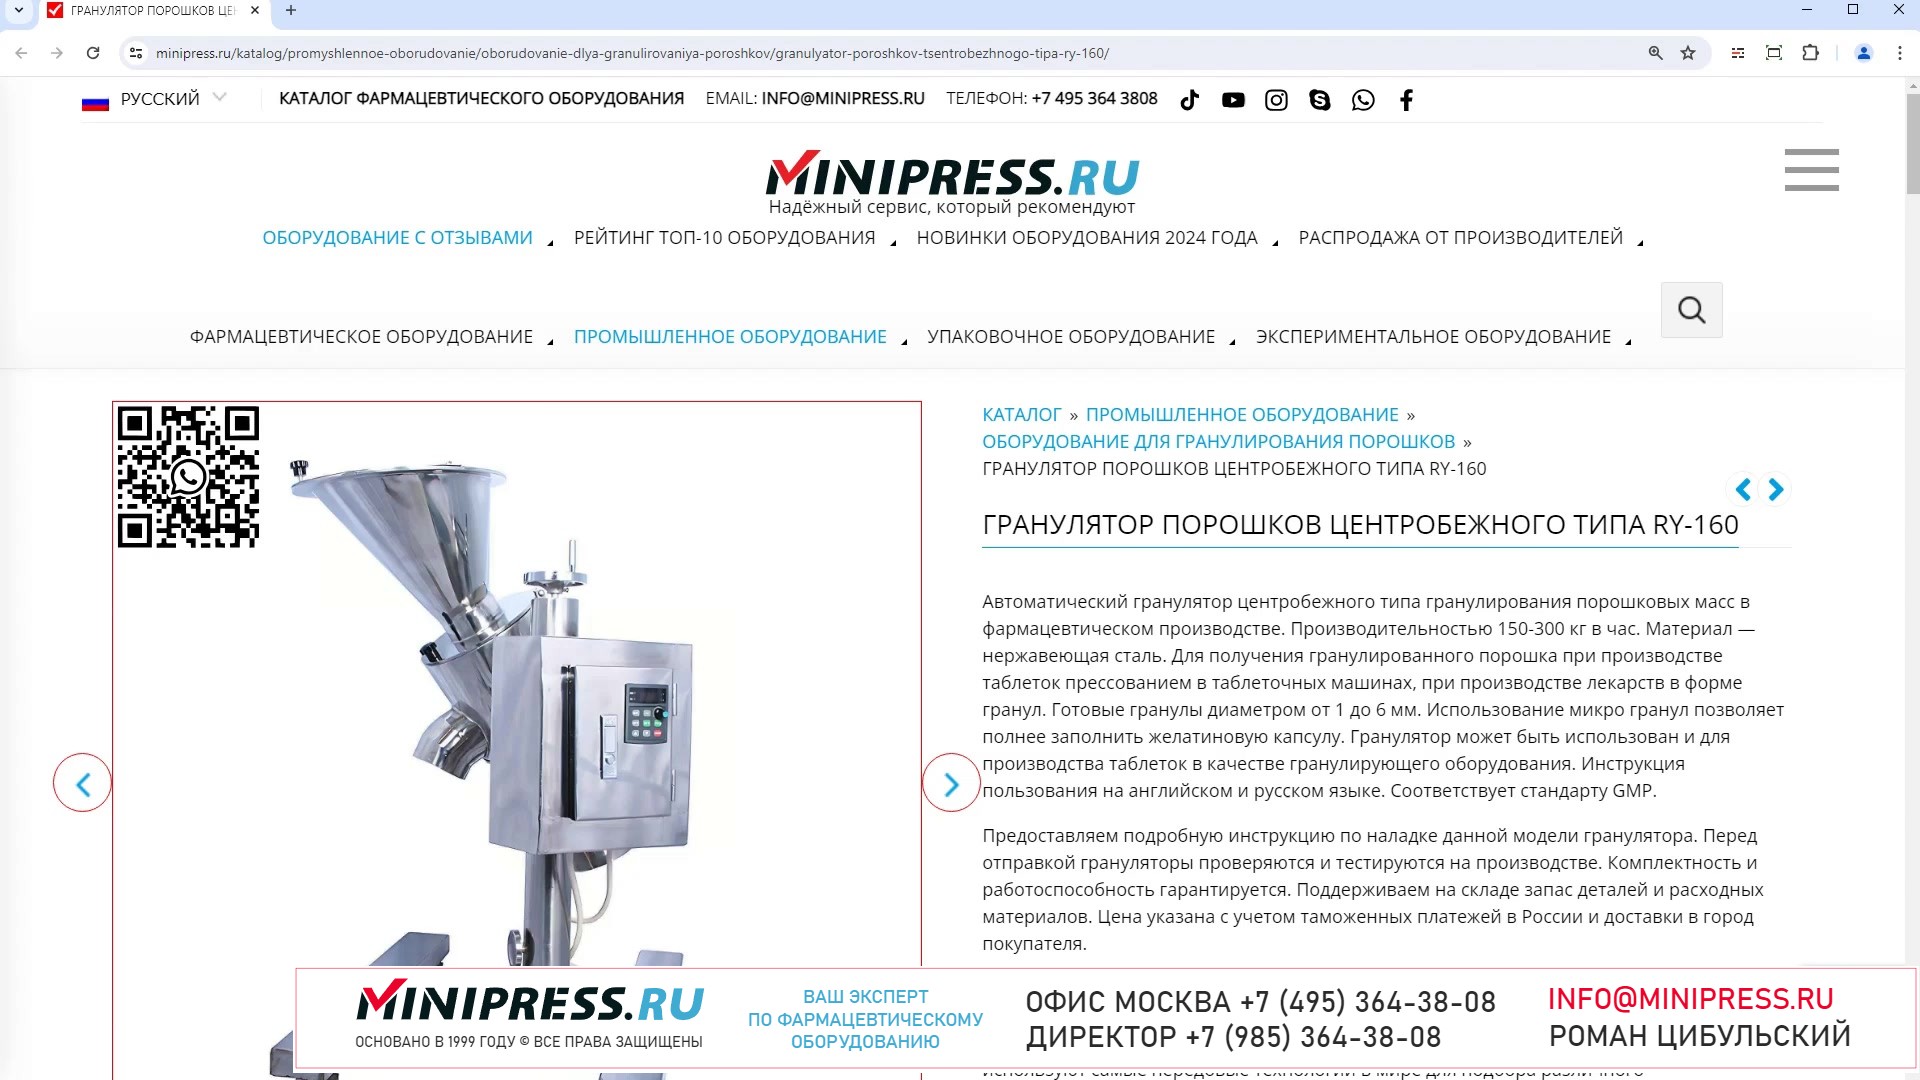 Minipress.ru Гранулятор порошков центробежного типа RY-160